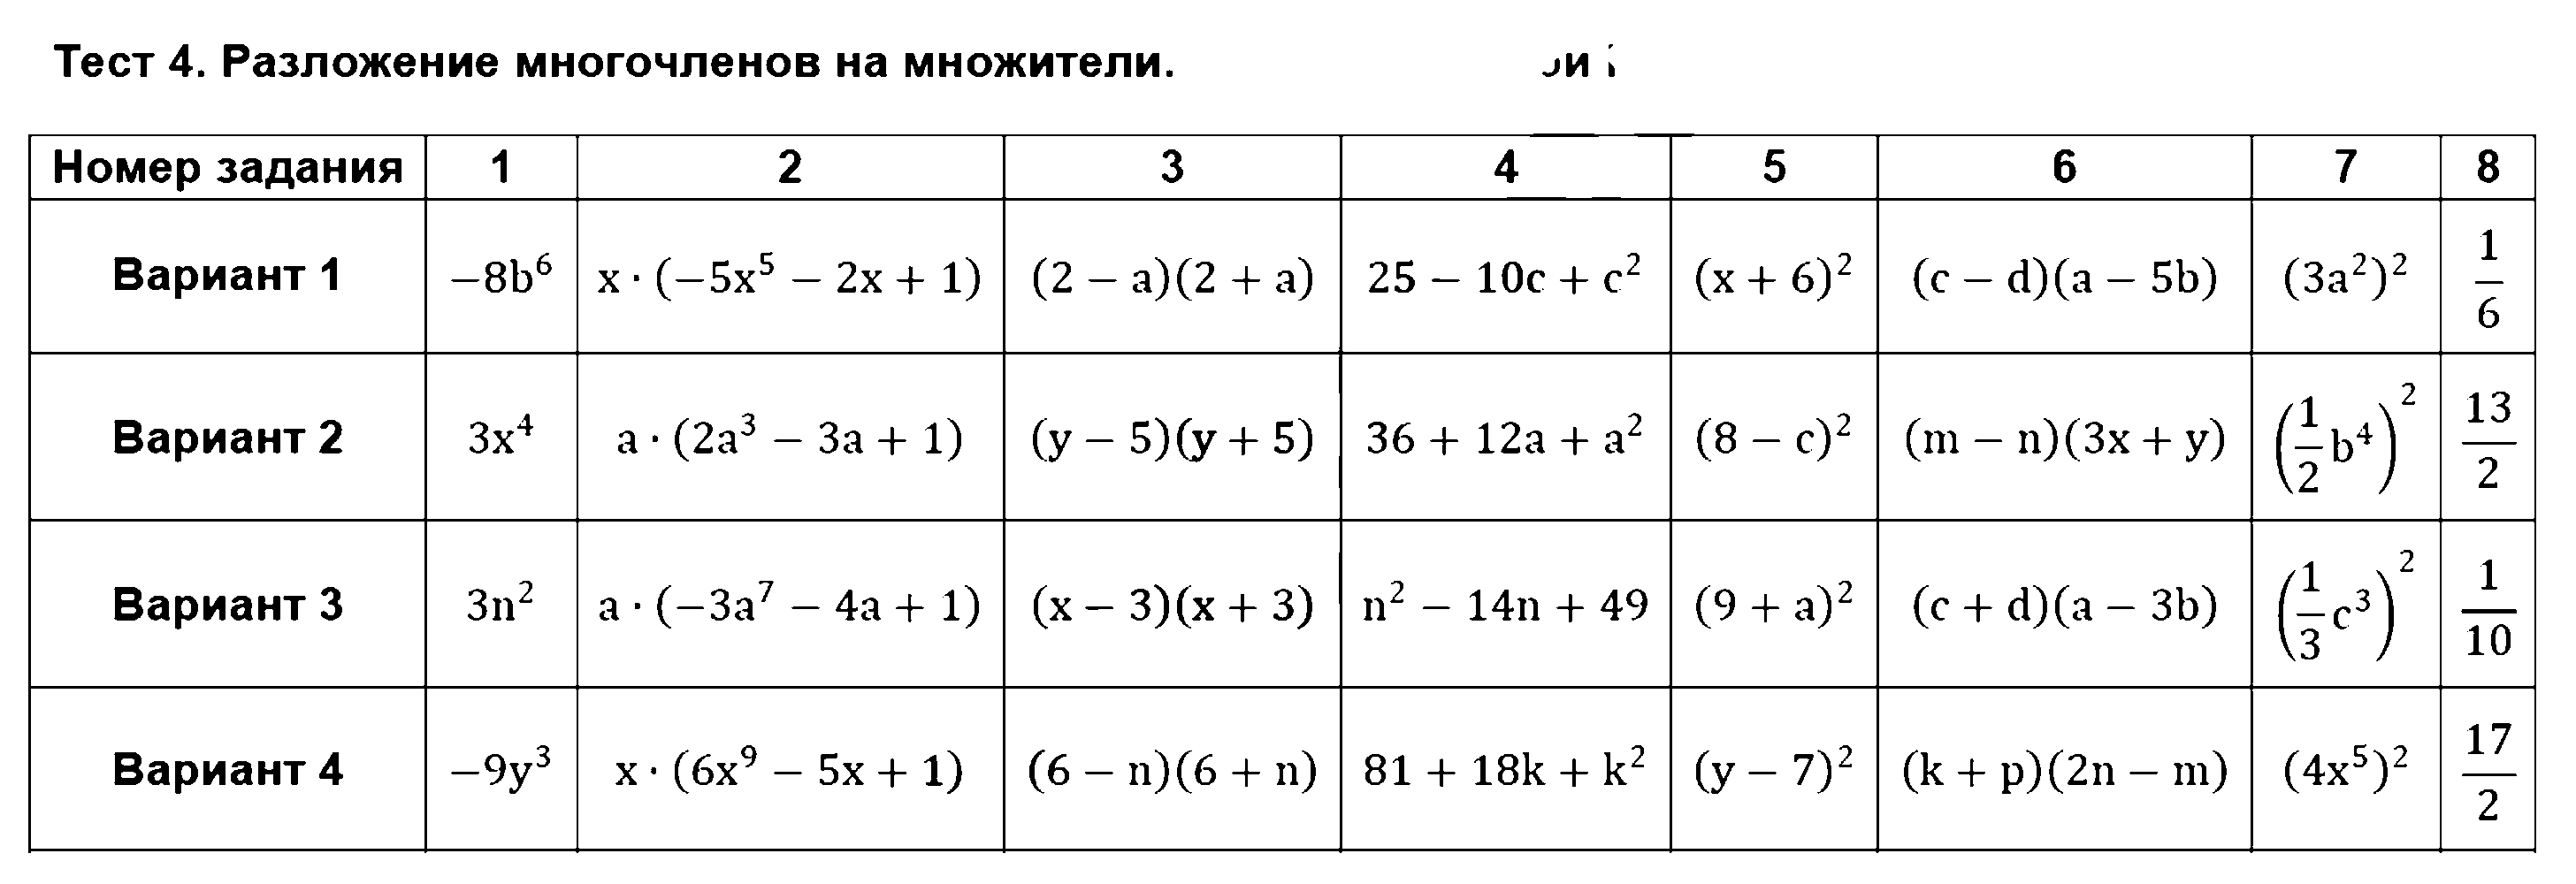 ГДЗ Алгебра 7 класс - Тест 4. Разложение многочленов на множители